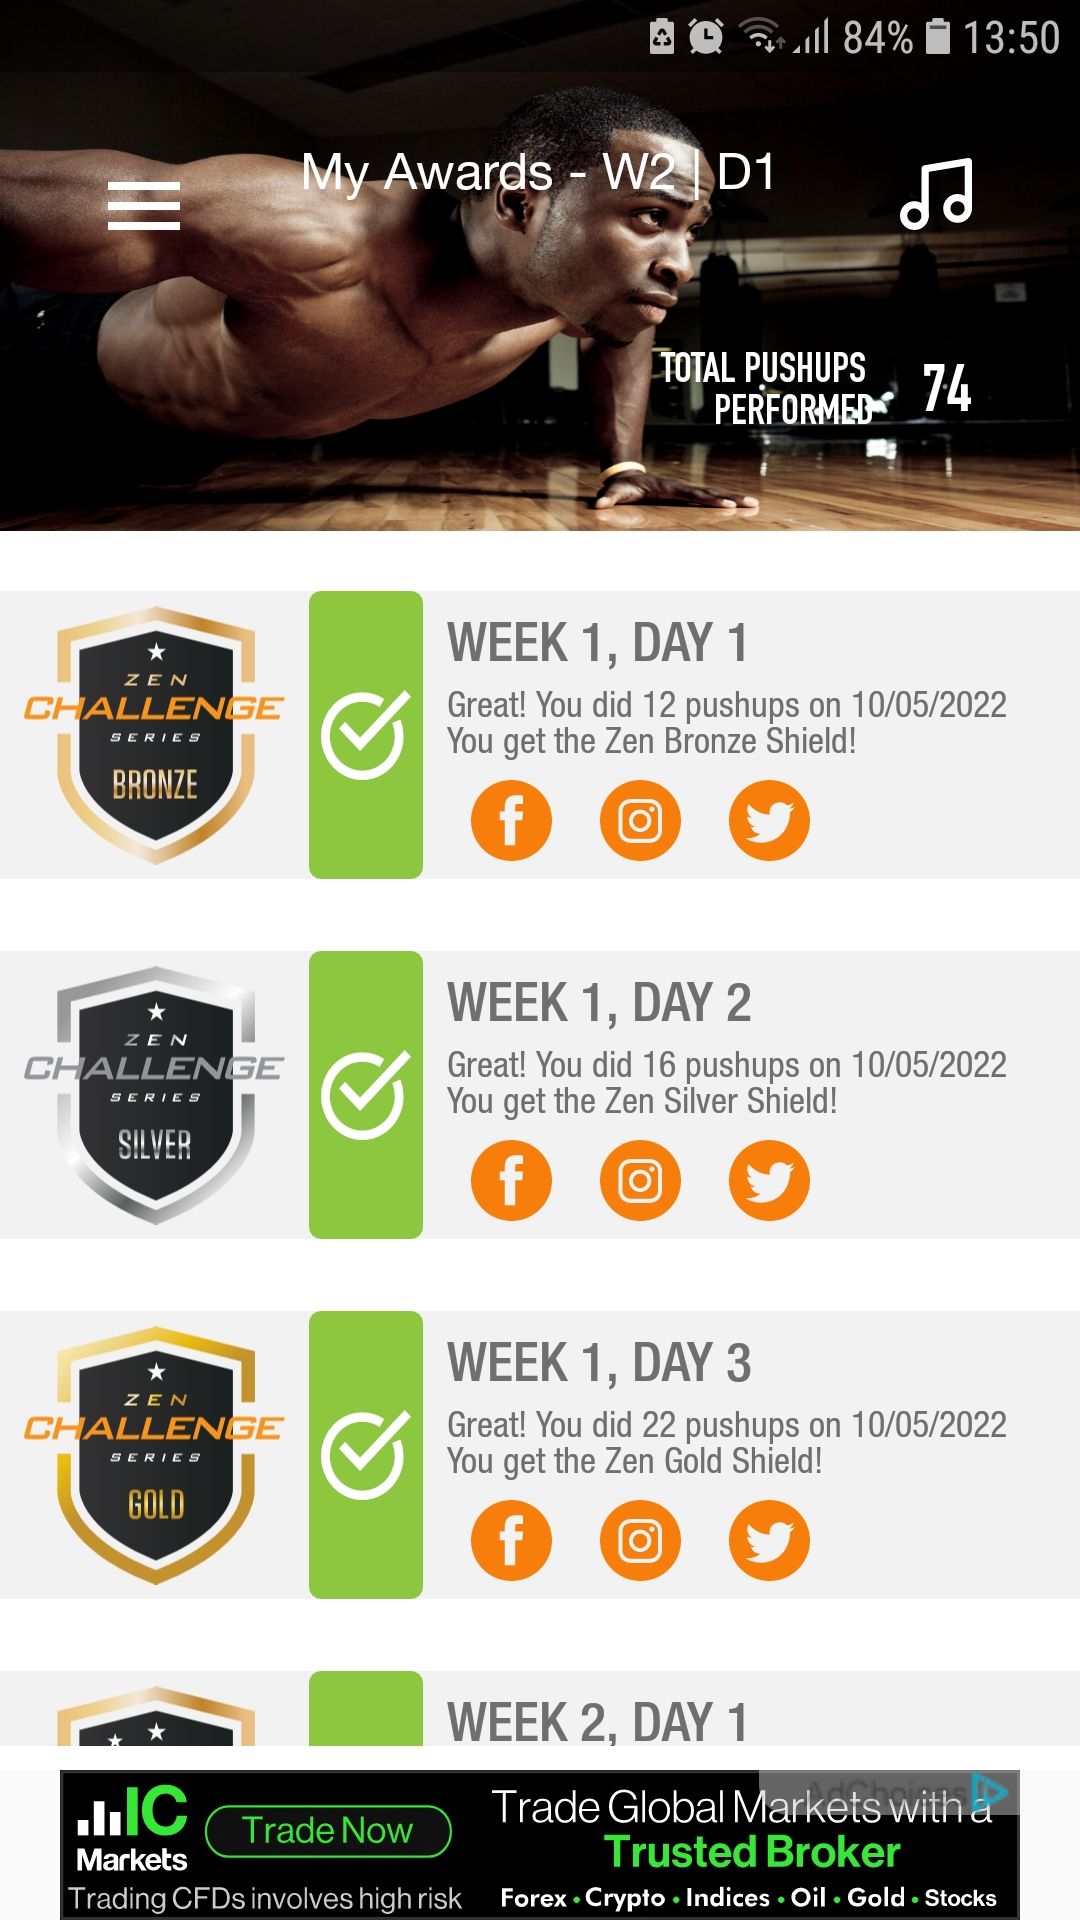 100 Pushups trainer mobile workout app achievements